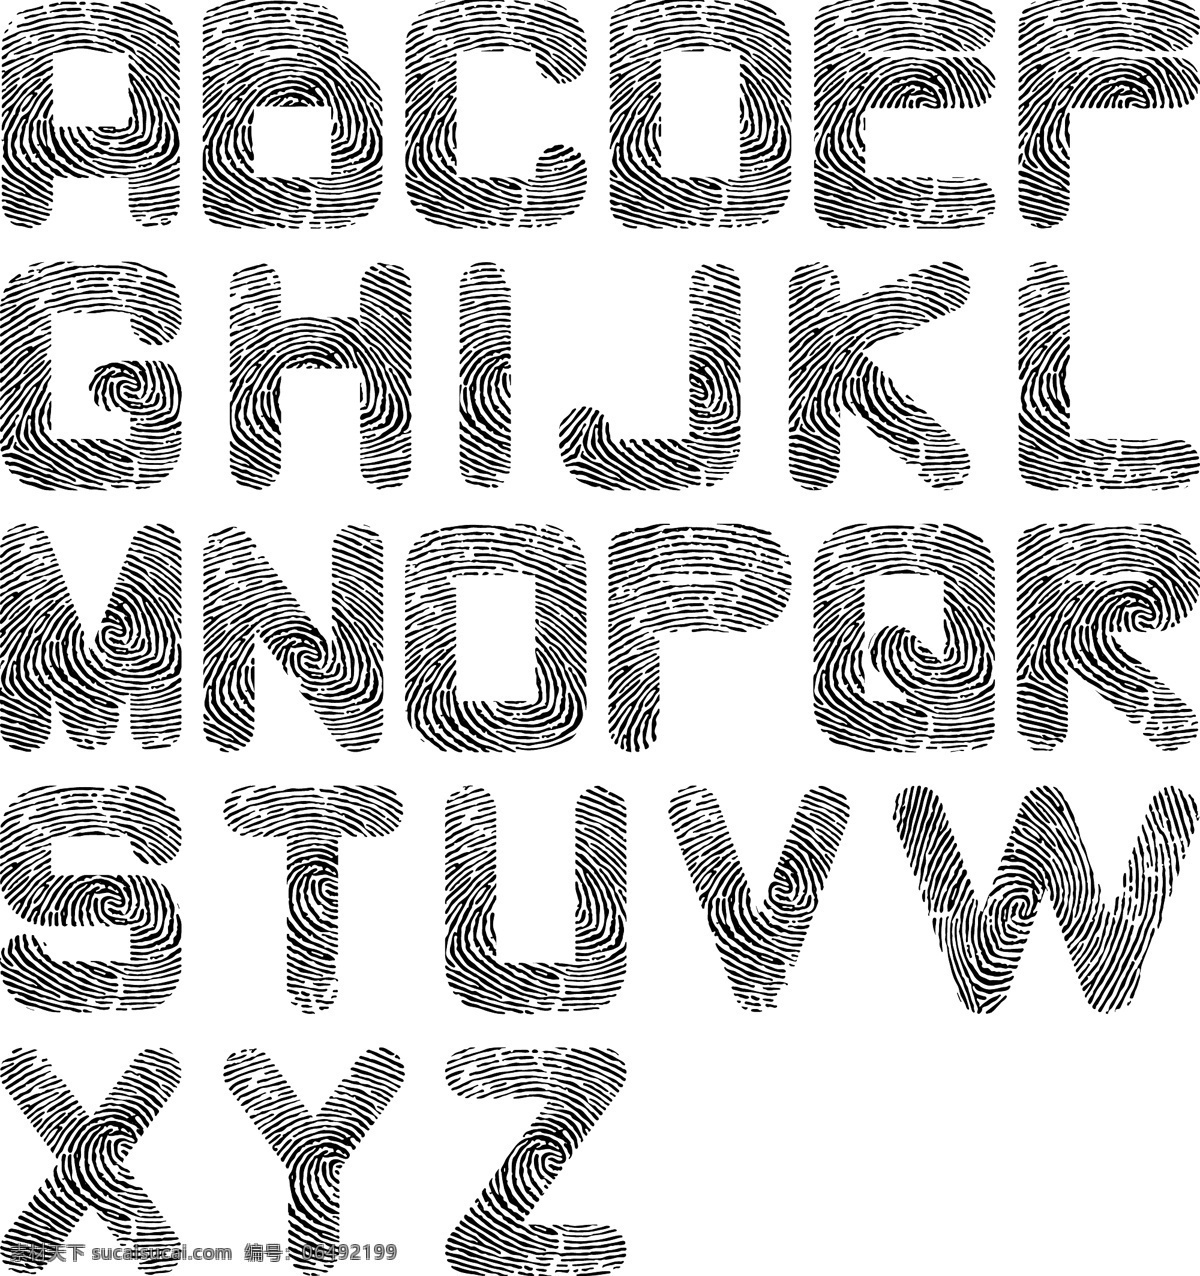 26个字母 符号 其他设计 其他矢量 矢量素材 数字 形状 英文 指纹 字母 矢量 模板下载 指纹英文字母 质感 拉丁字母 矢量图 艺术字